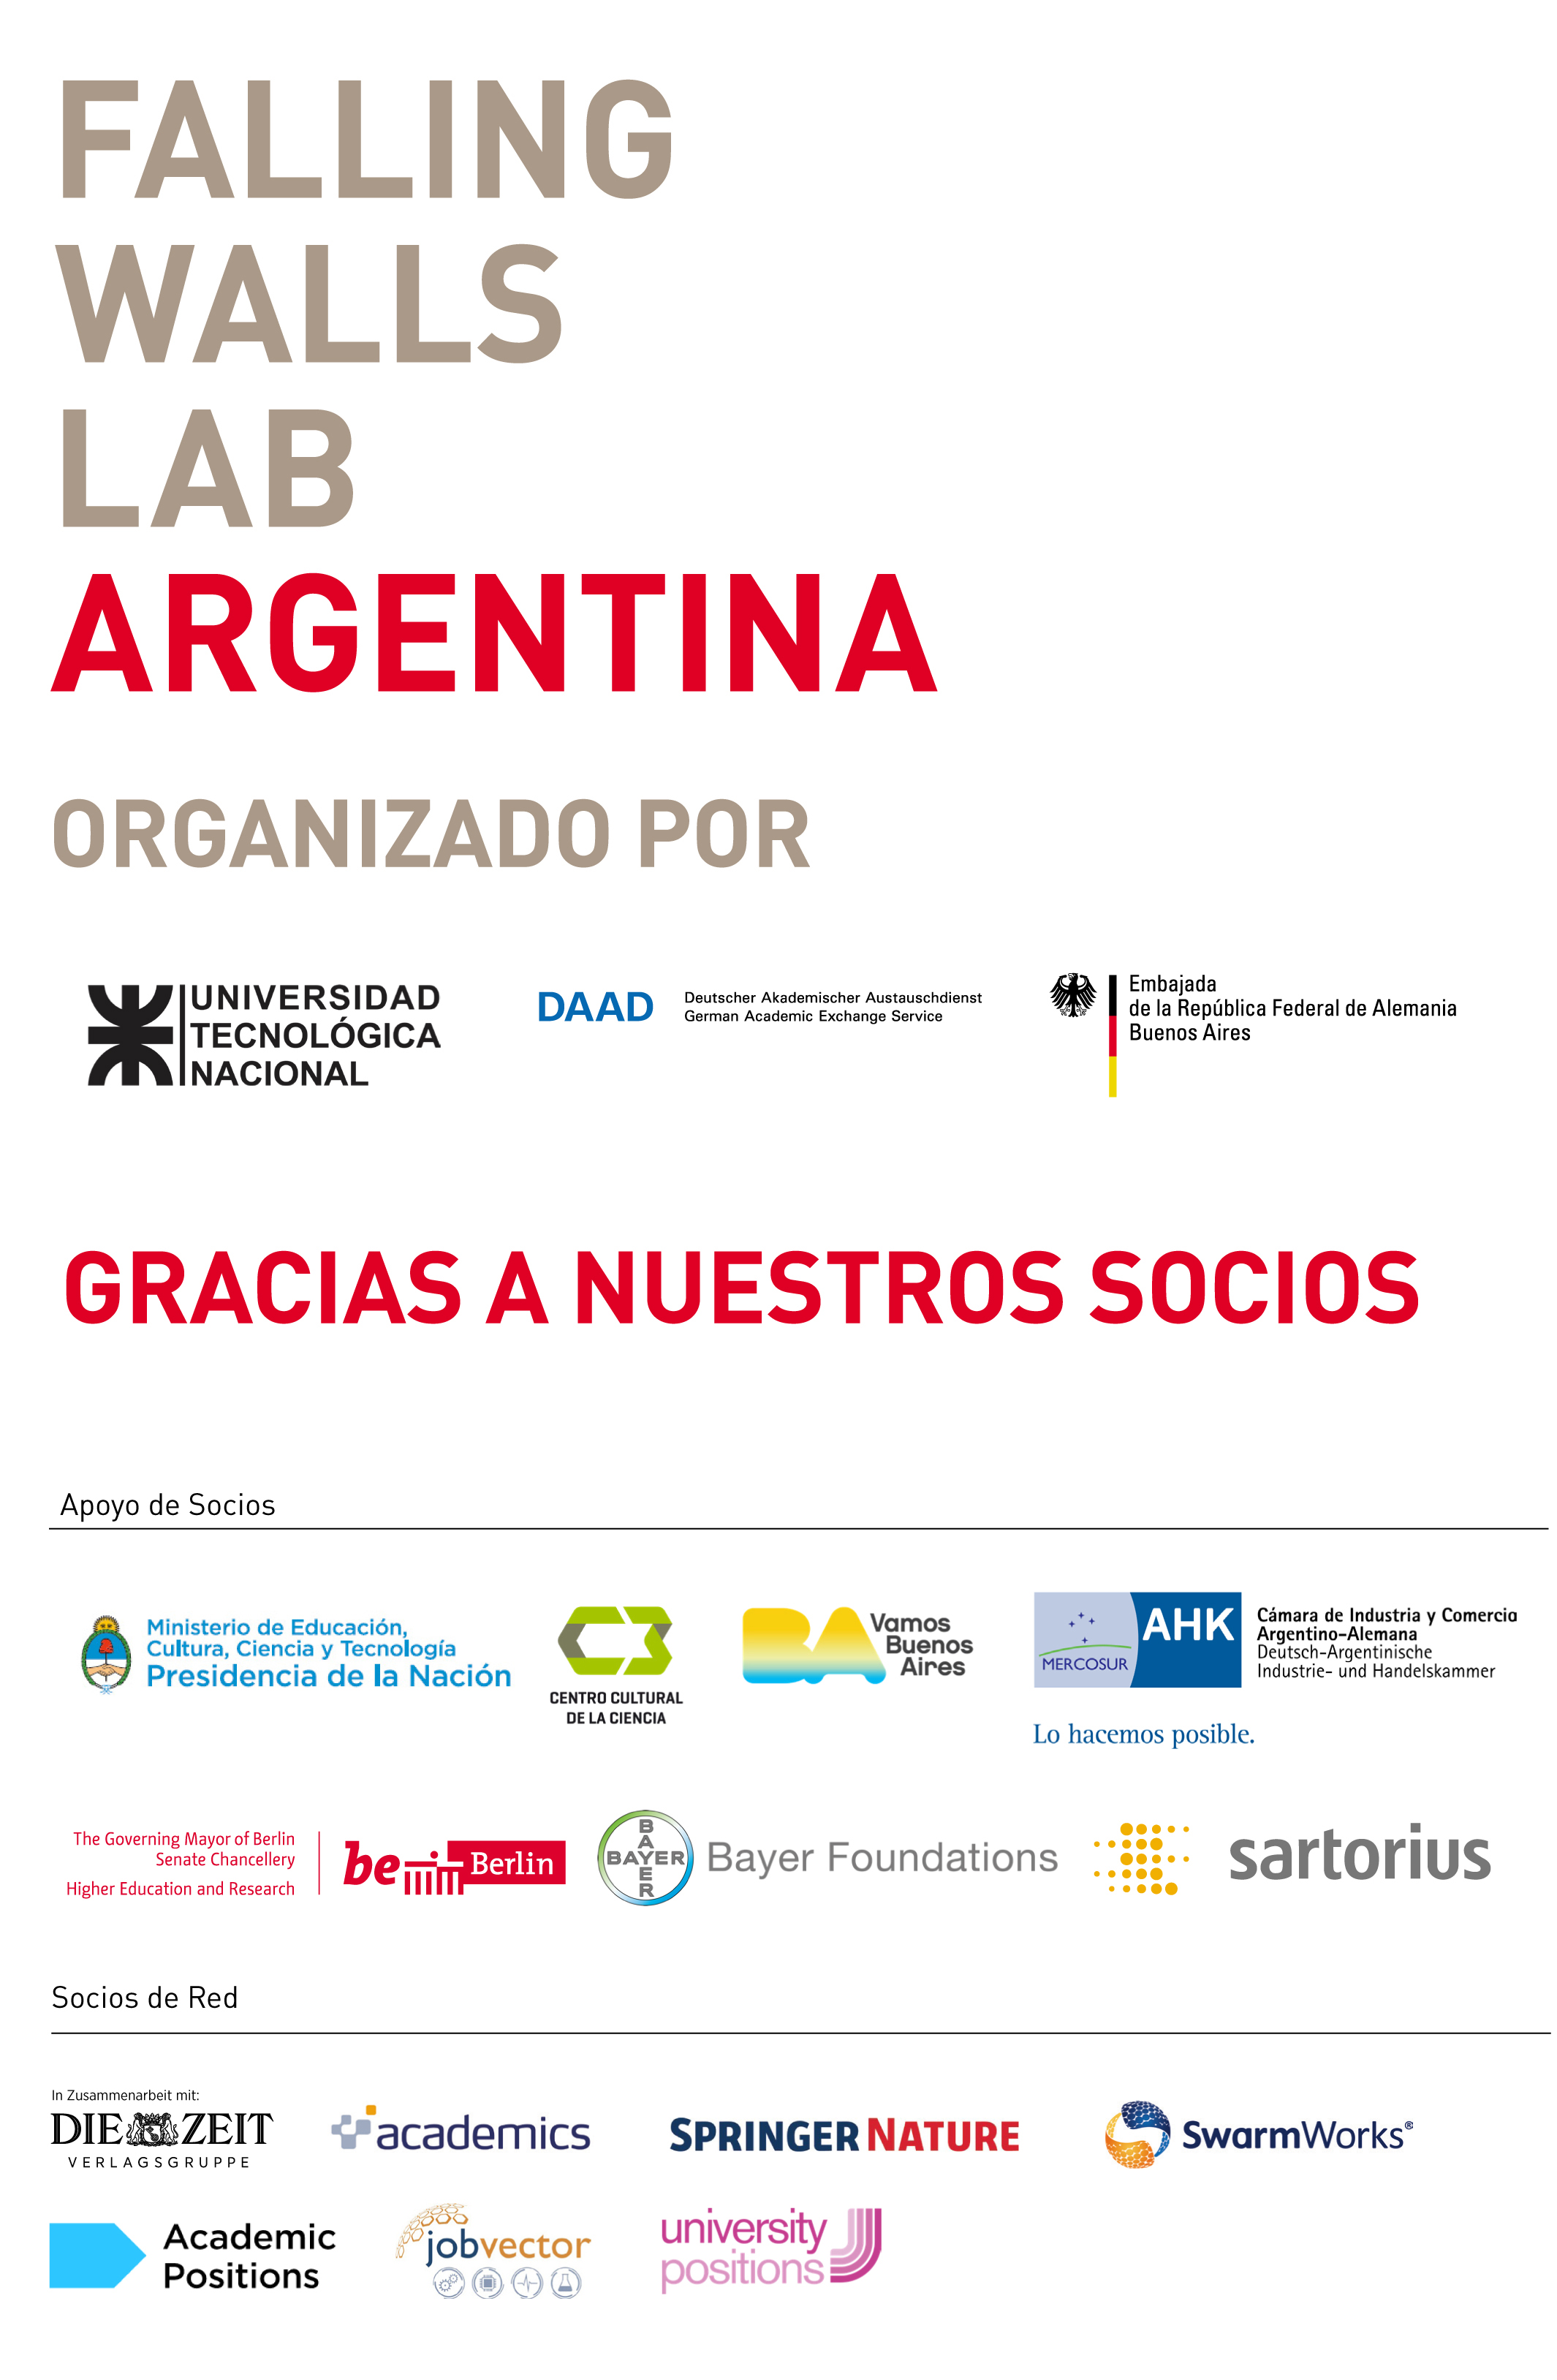 Falling Walls Lab Argentina 2019 - Organizadores, acompañantes, auspiciantes